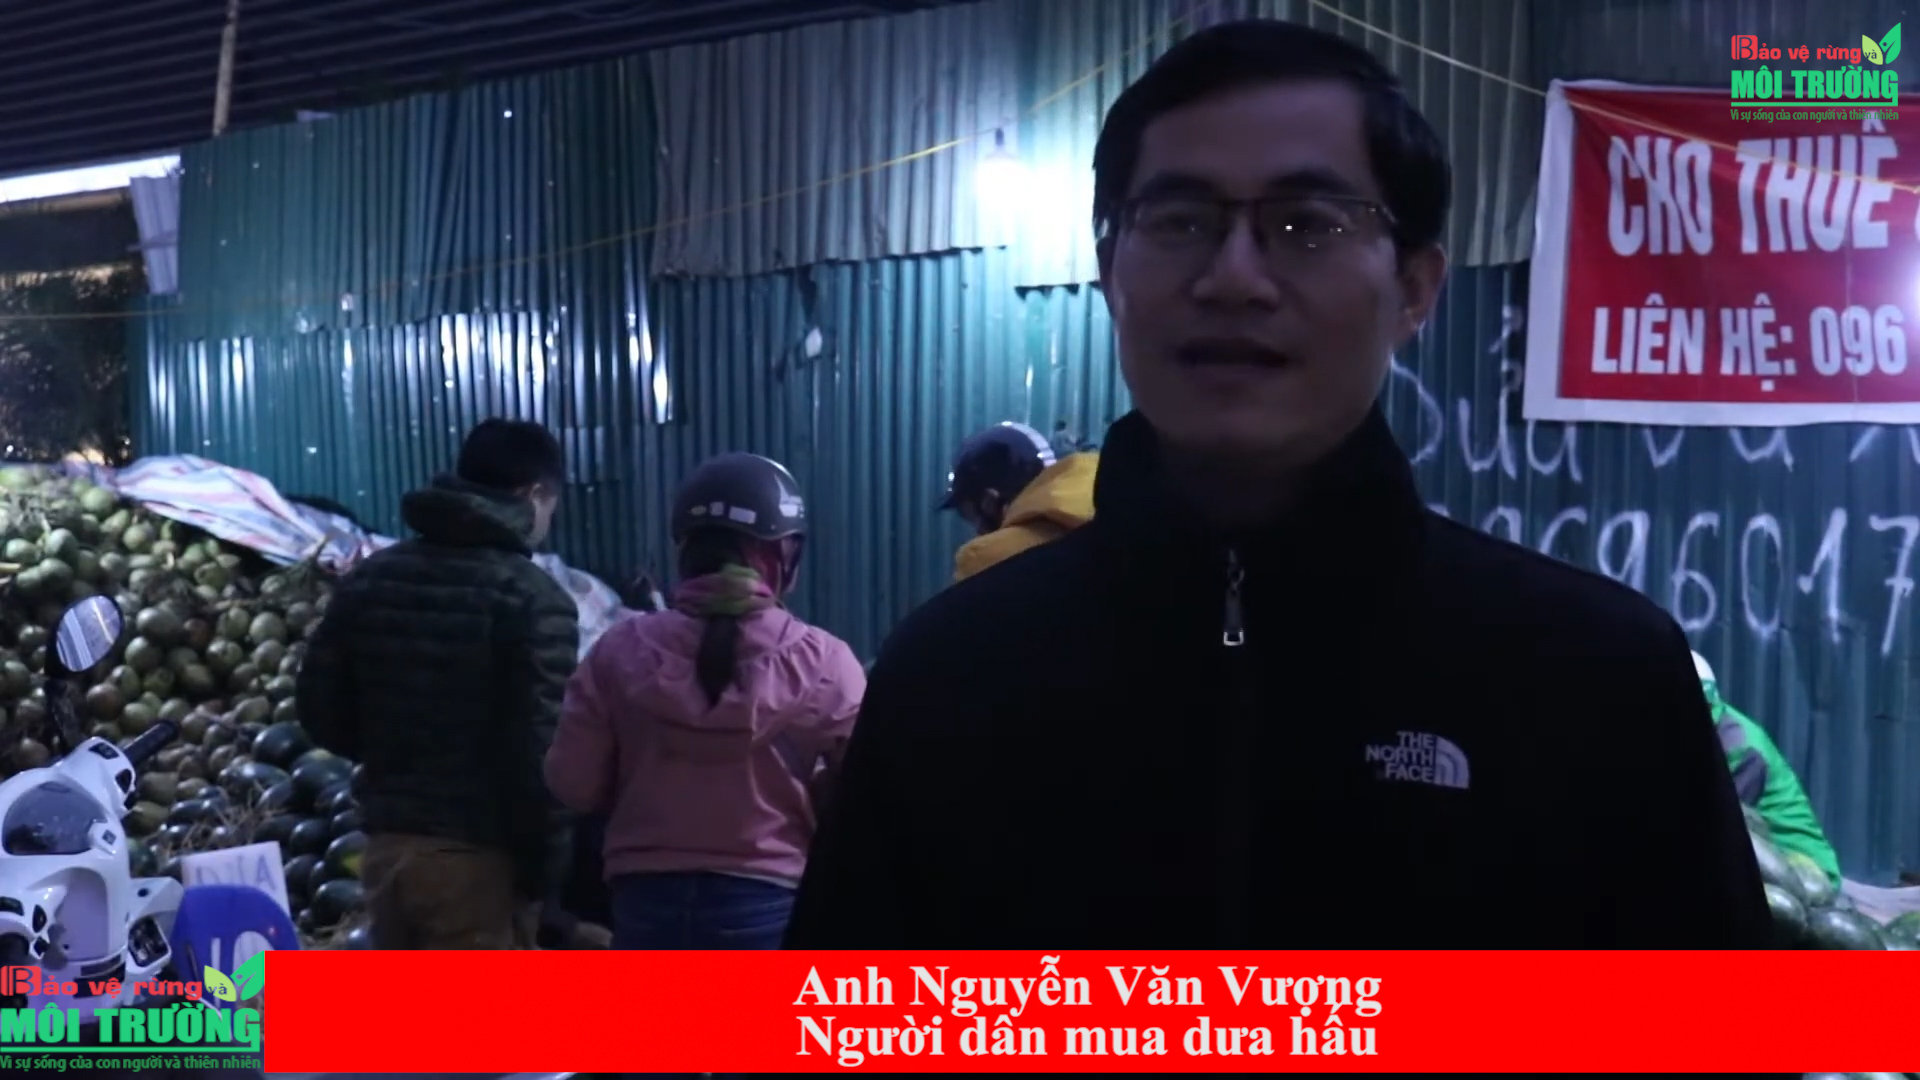 Anh Nguyễn Văn Vượng, khách hàng mua dưa hấu.